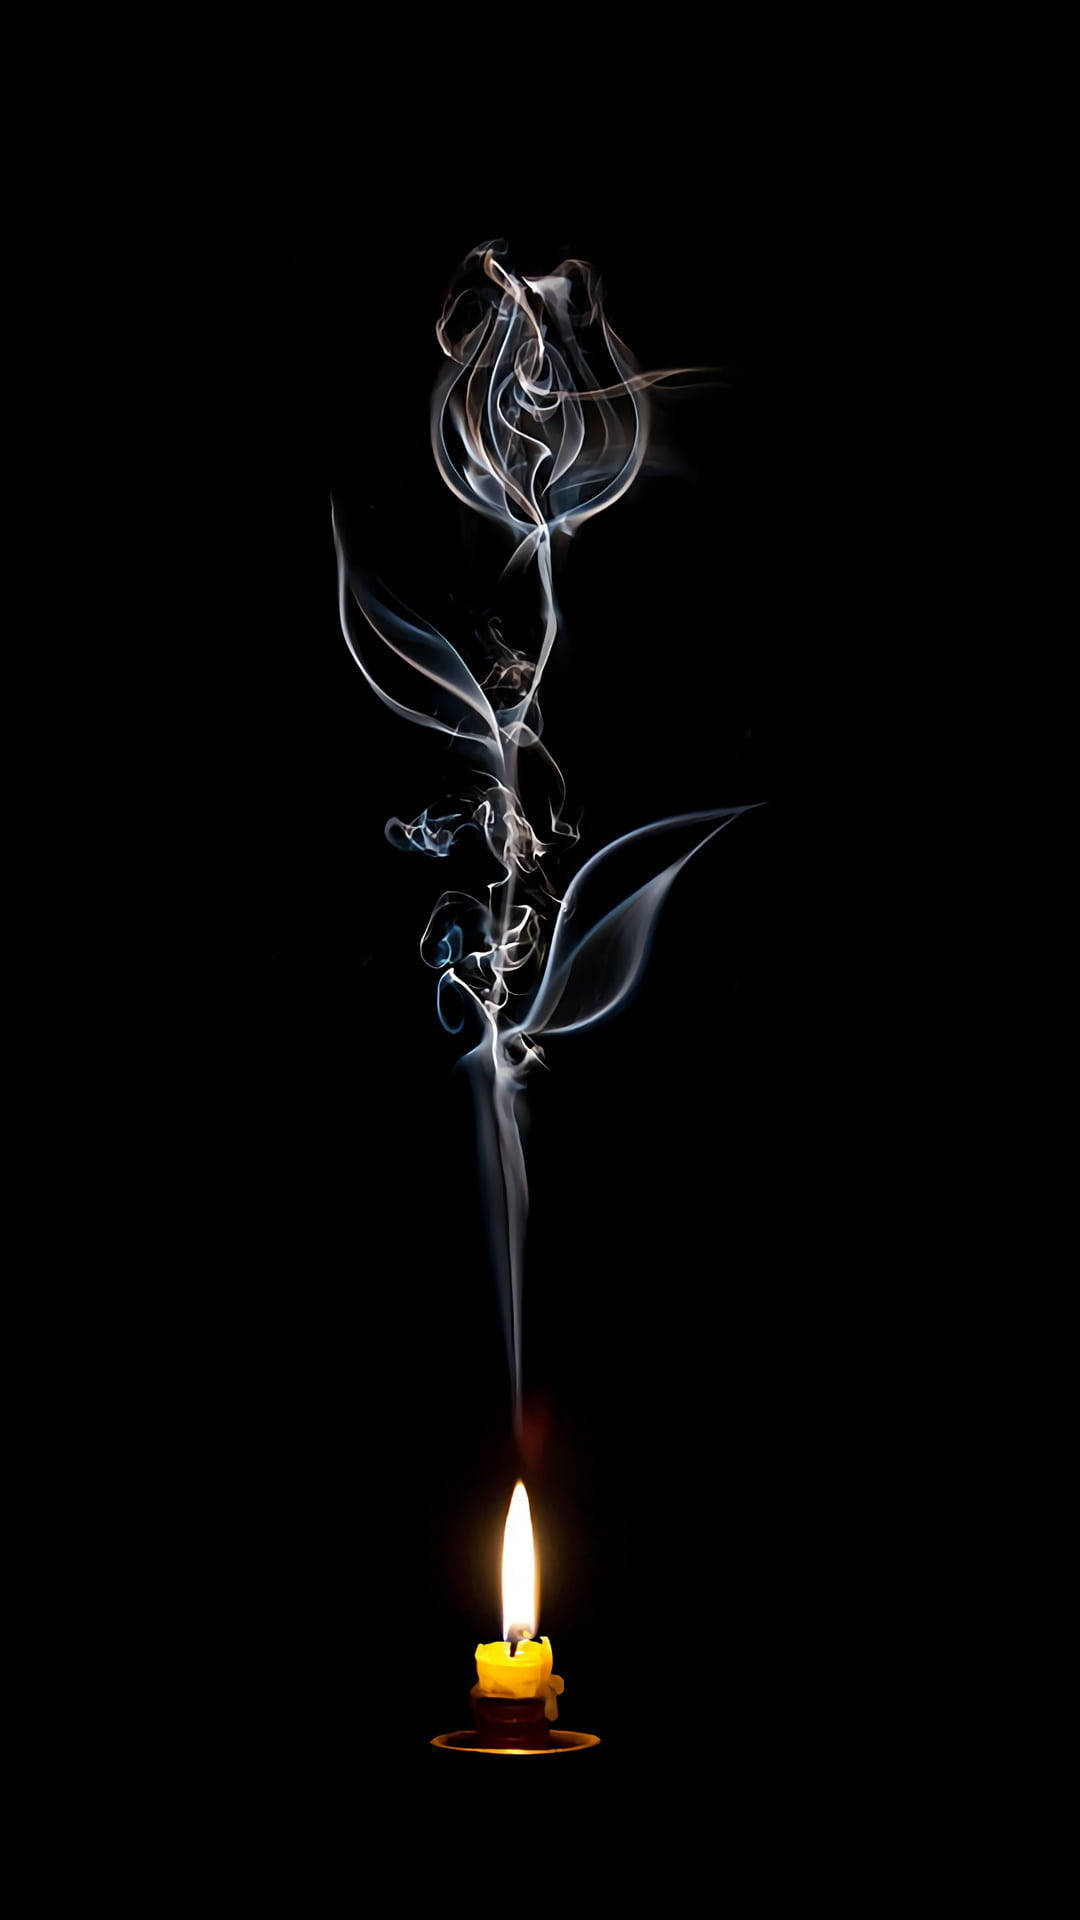 Smoke Rose Art Iphone